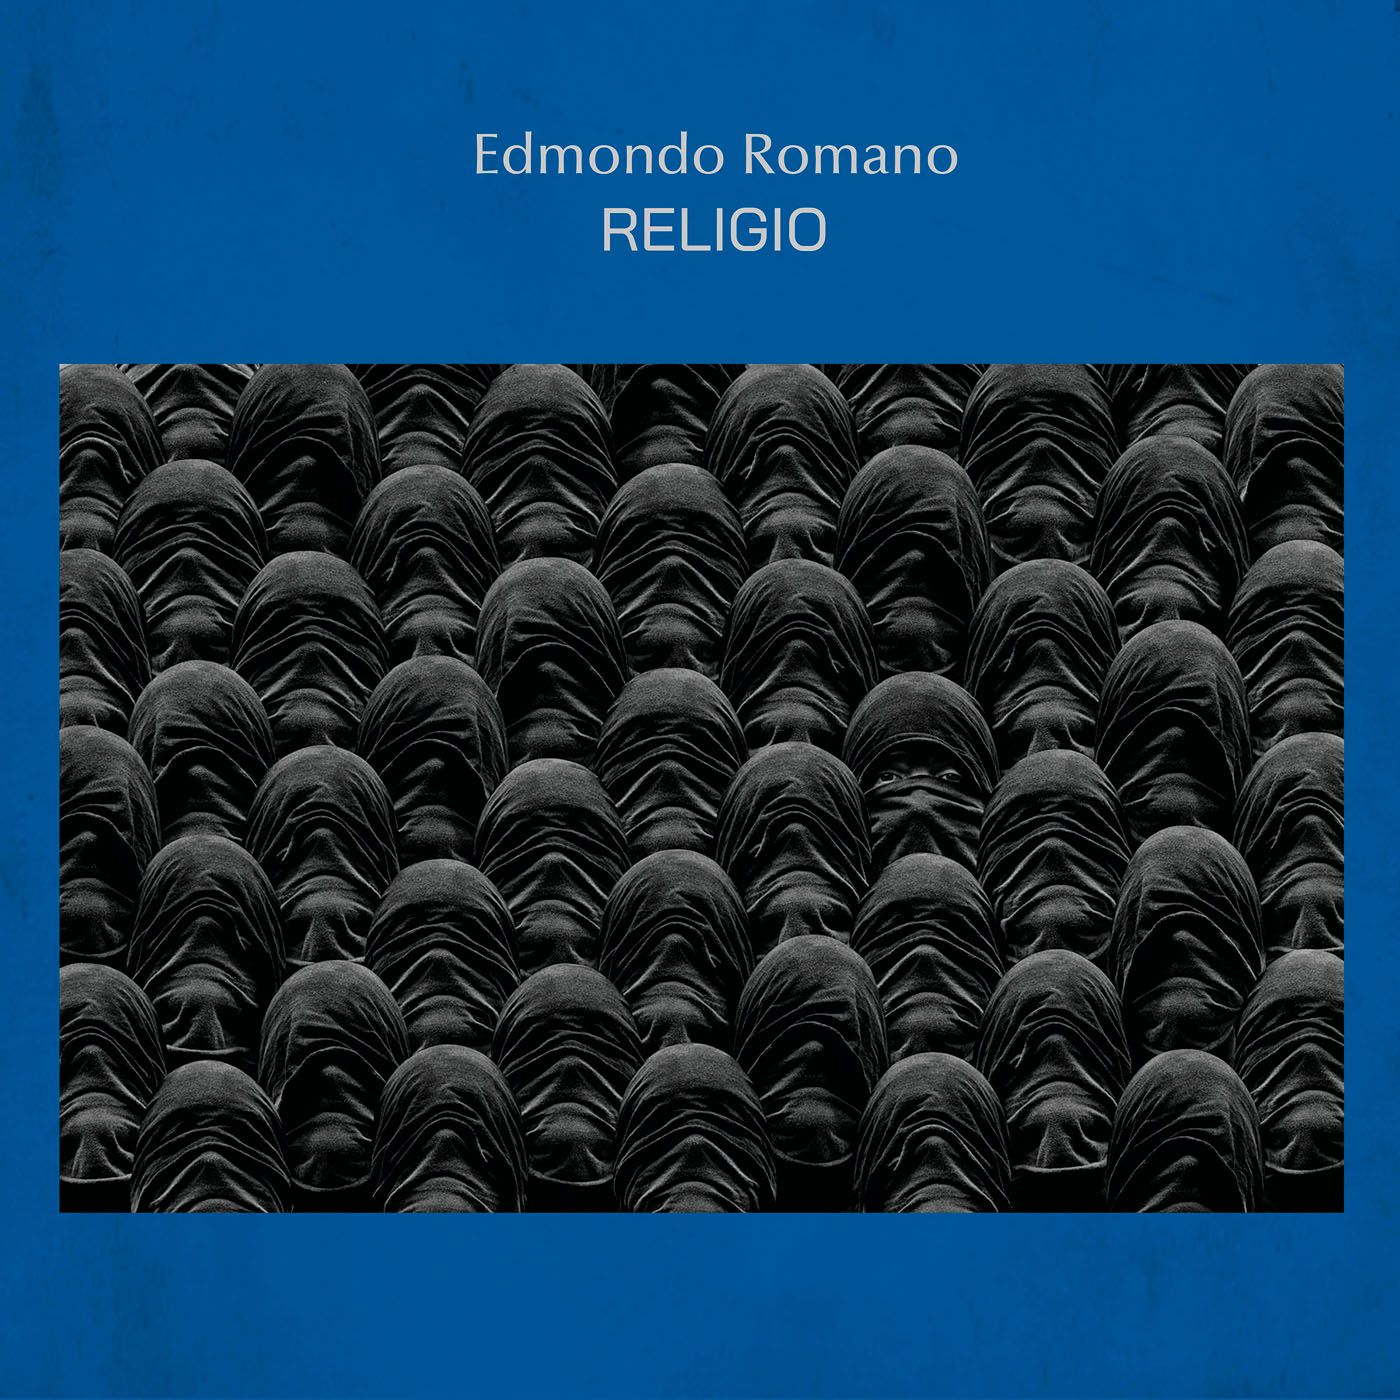 Edmondo Romano